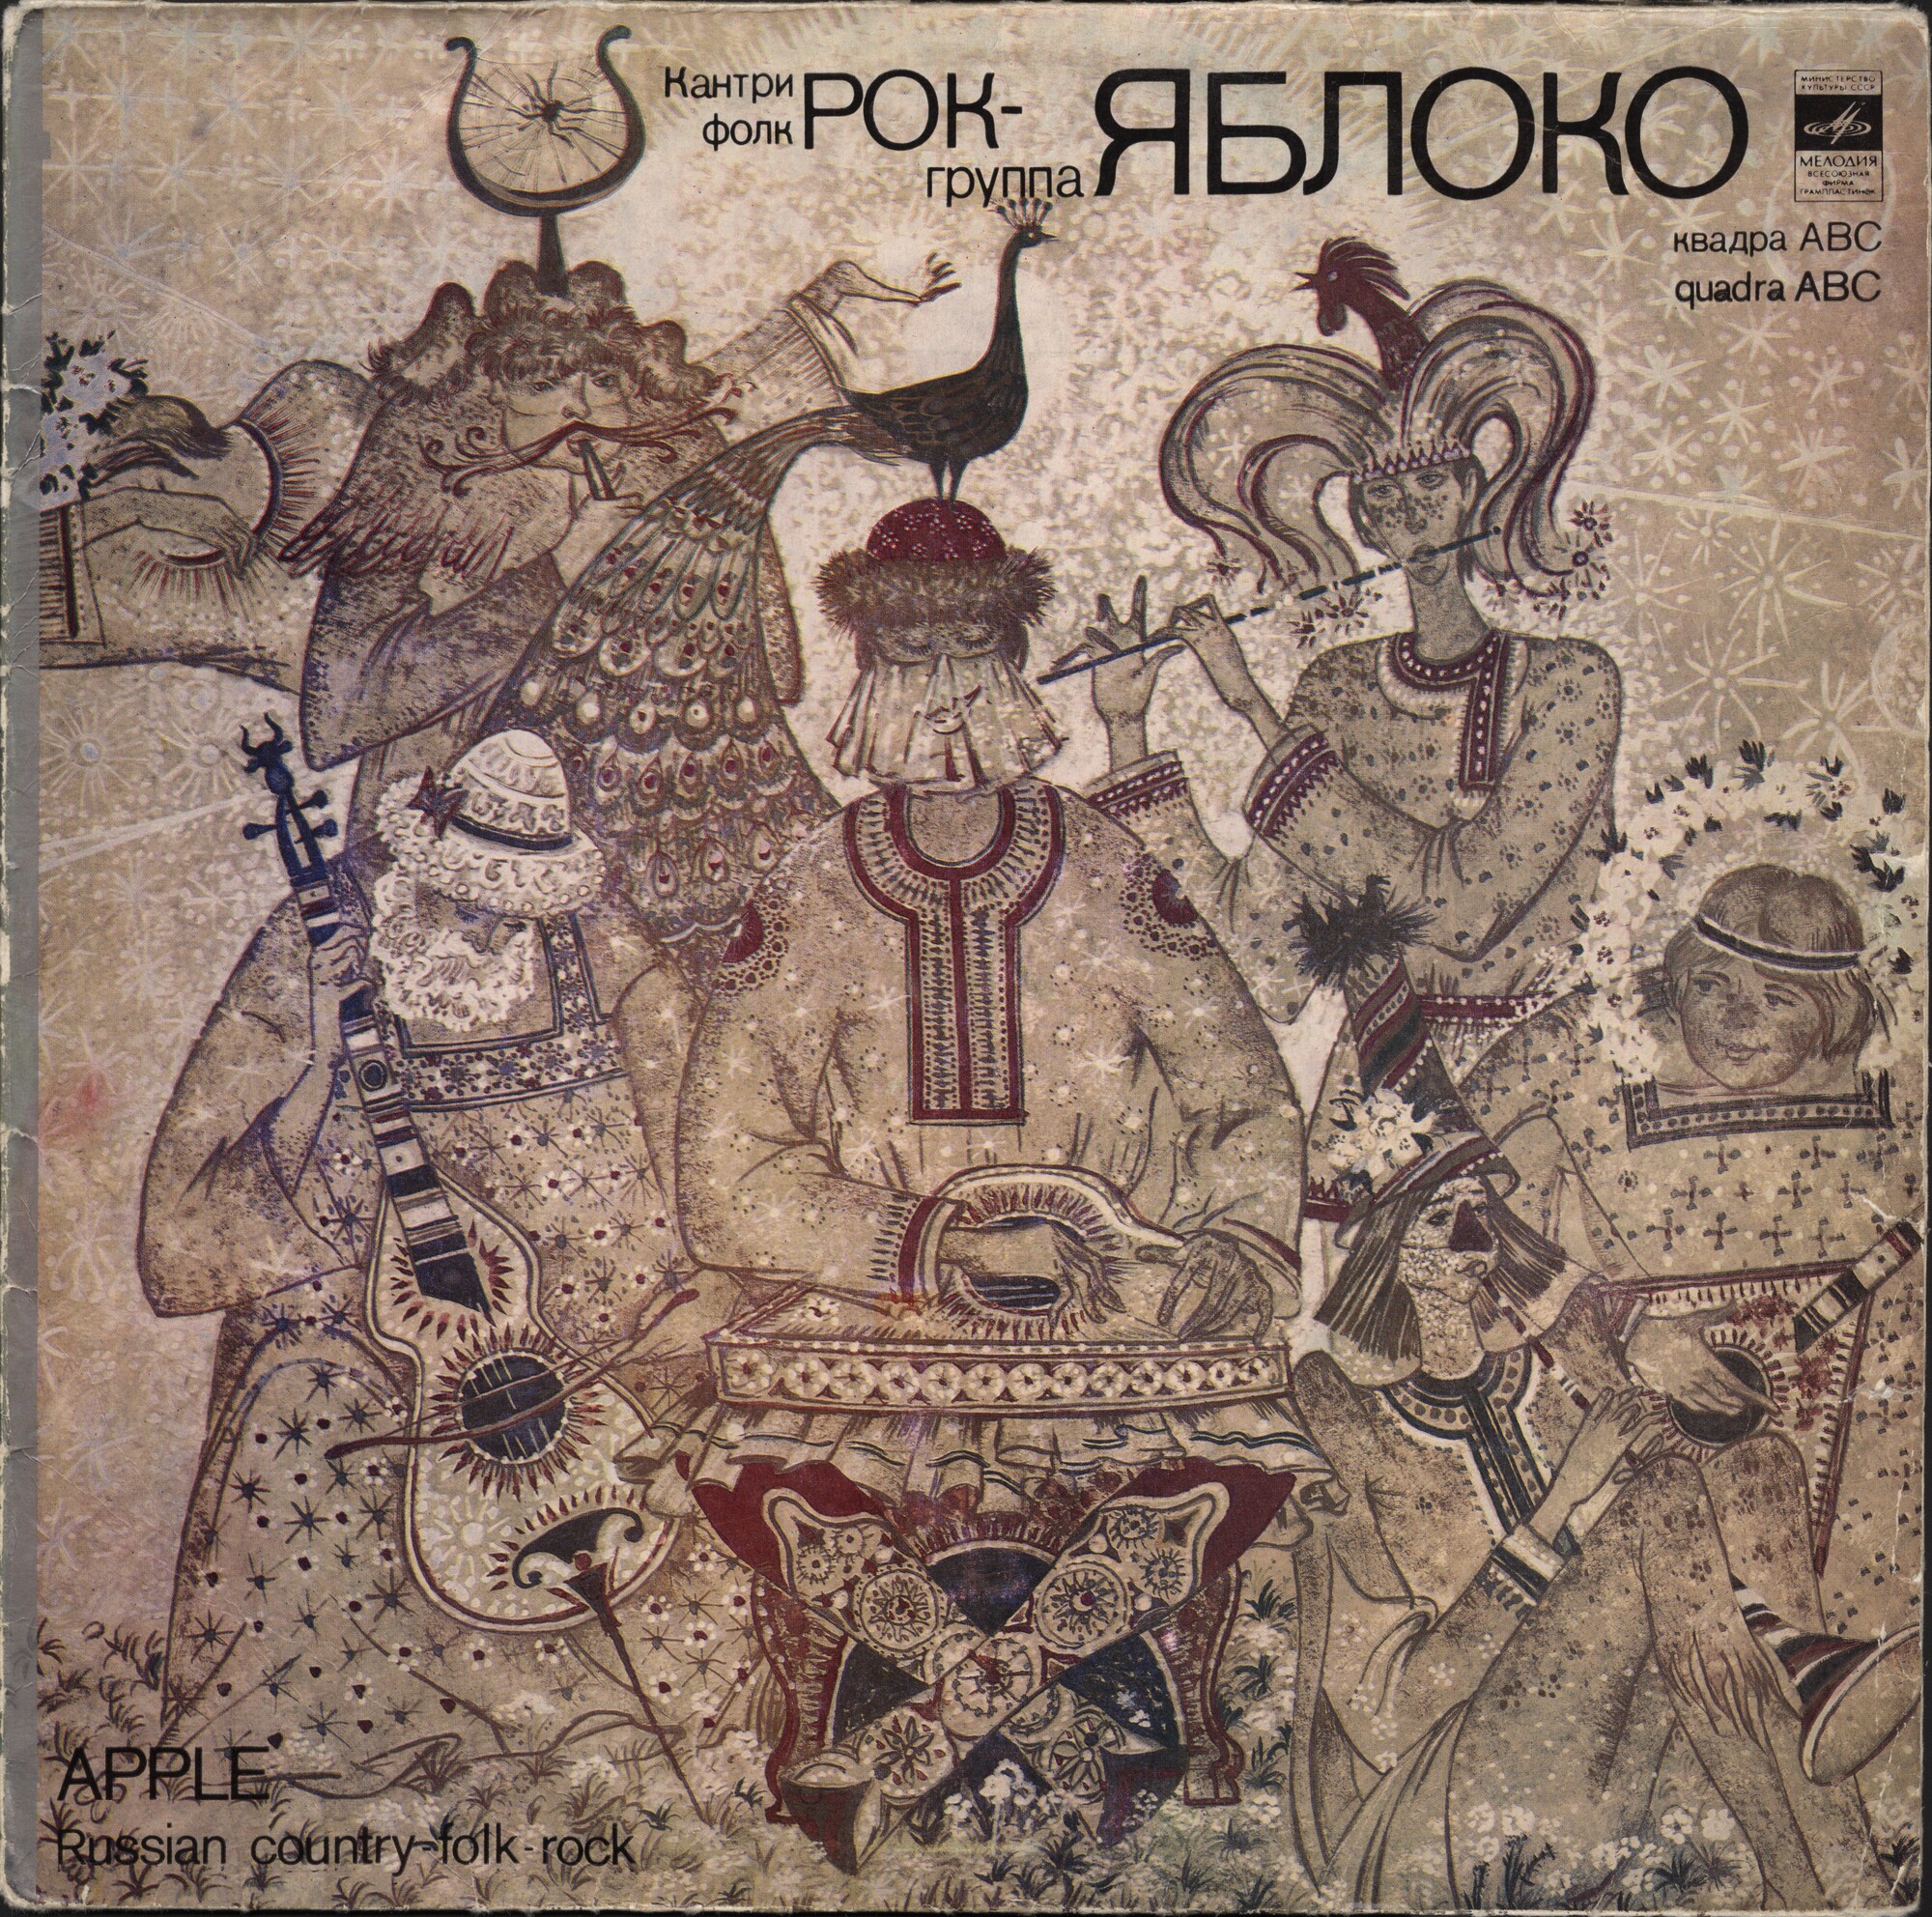 Кантри-фолк-рок группа "Яблоко", рук. Юрий Берендюков